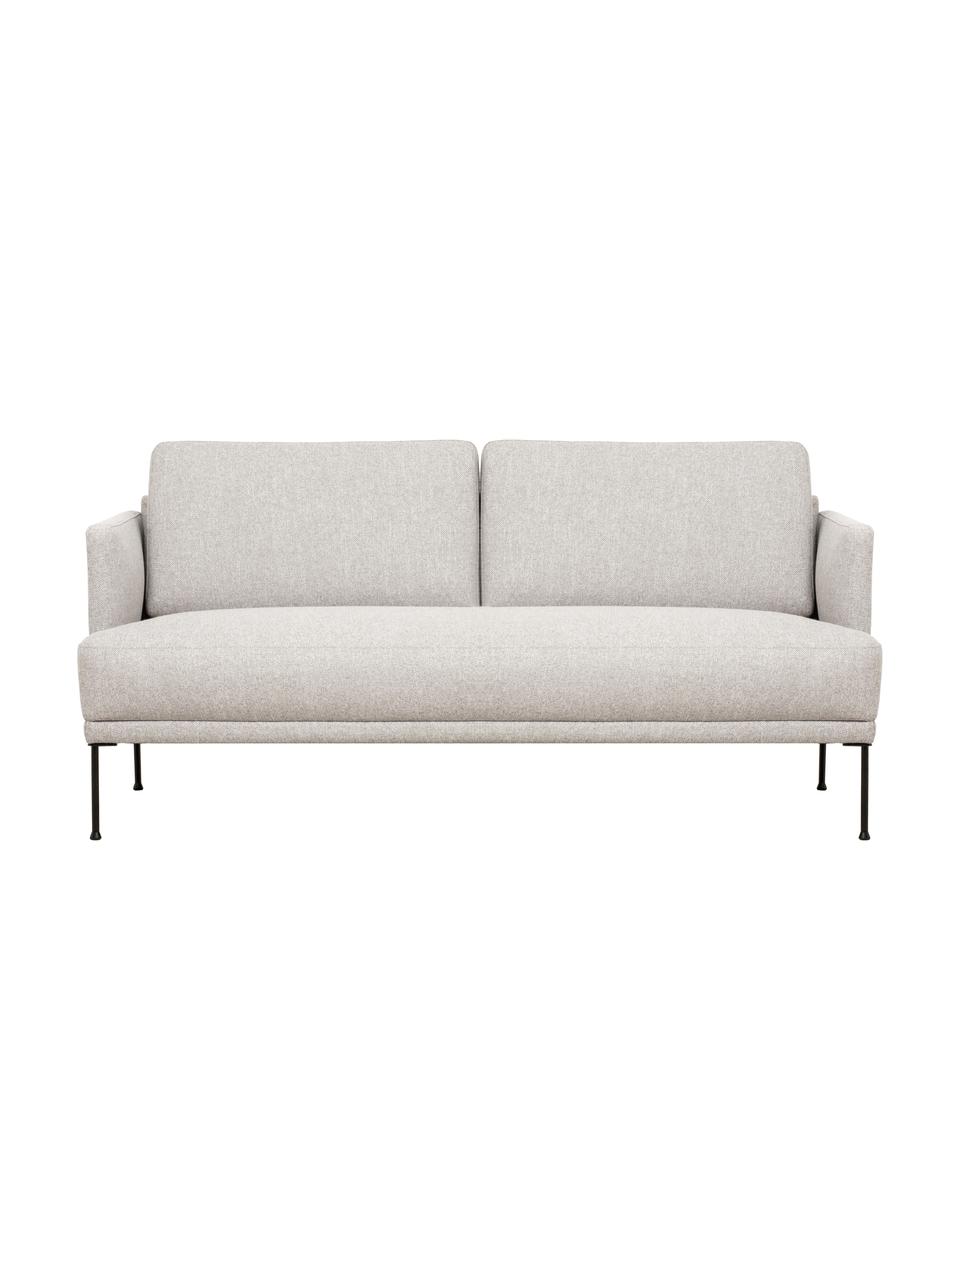 Sofa Fluente (2-Sitzer) in Beige mit Metall-Füßen, Bezug: 80% Polyester, 20% Ramie , Gestell: Massives Kiefernholz, Füße: Metall, pulverbeschichtet, Webstoff Beige, B 166 x T 85 cm